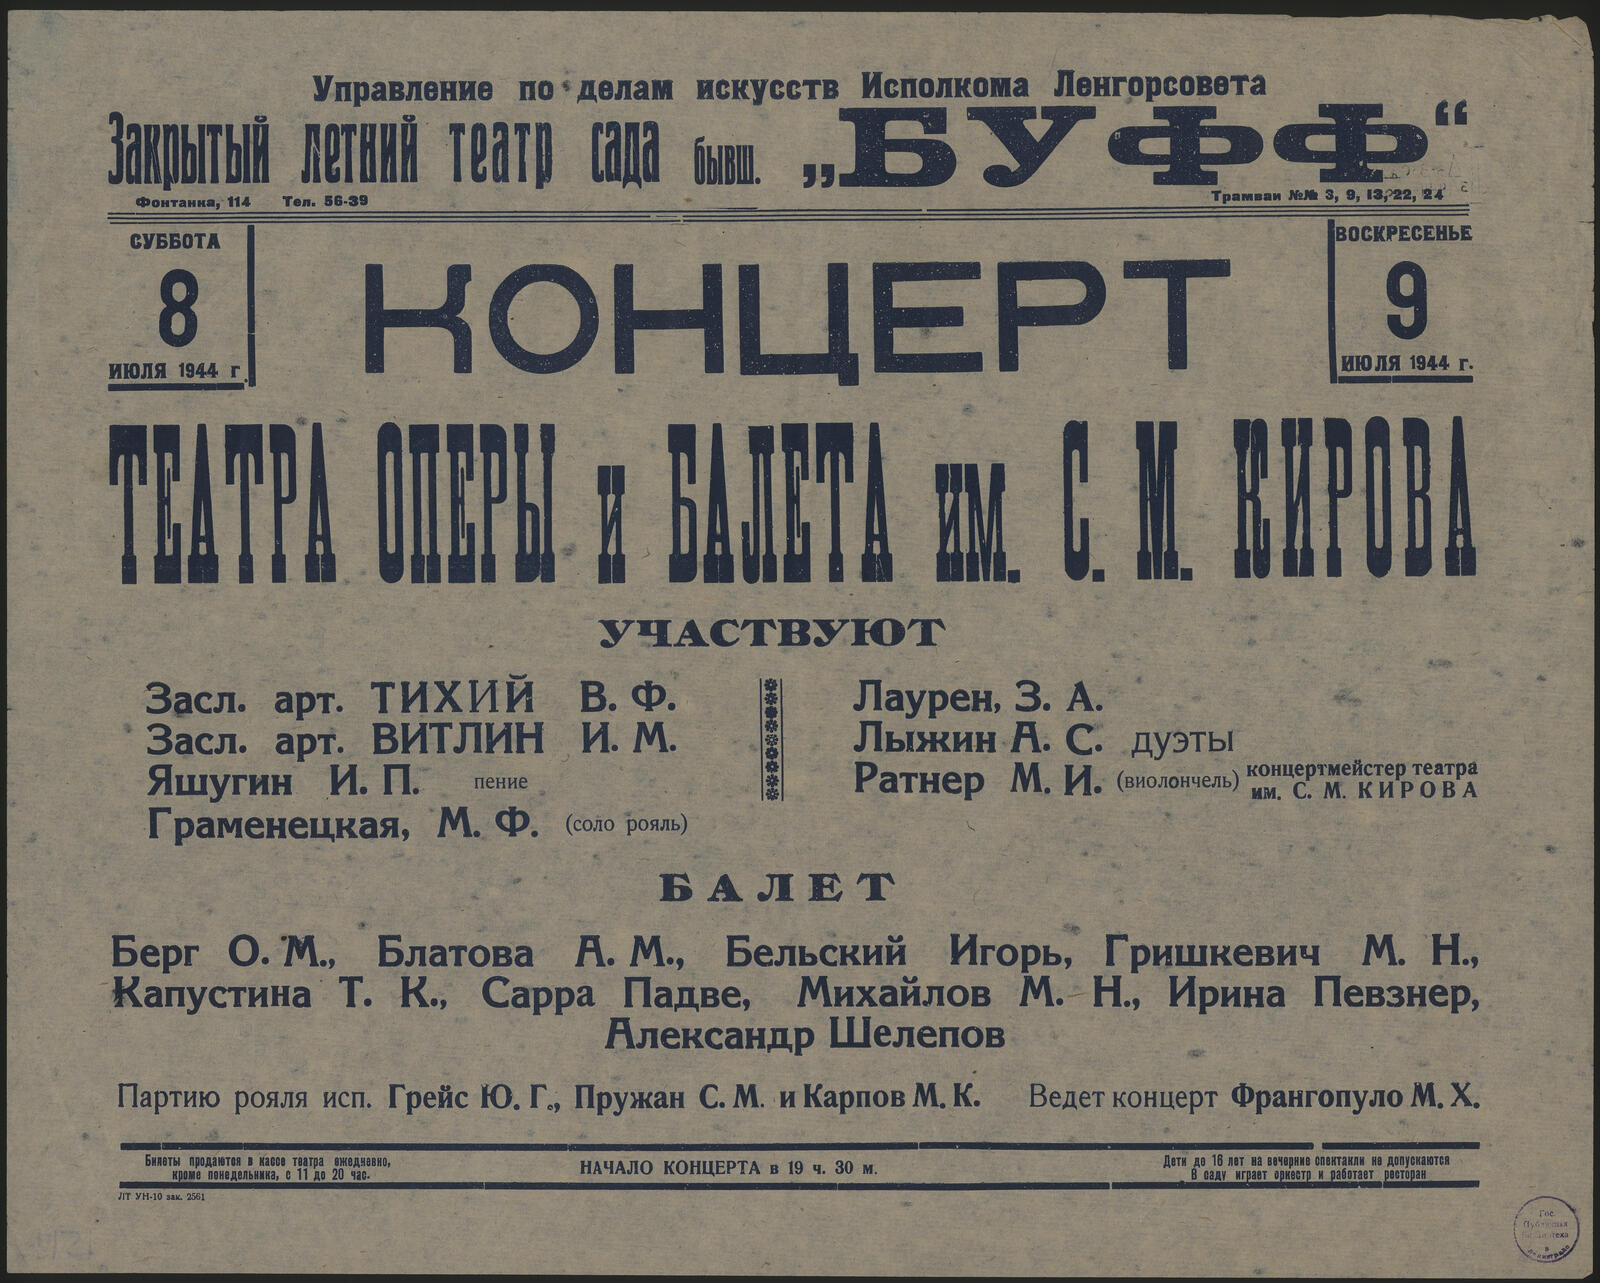 Изображение Концерт Театра оперы и балета им. С.М. Кирова. Суббота 8 июля, воскресенье 9 июля 1944 г.